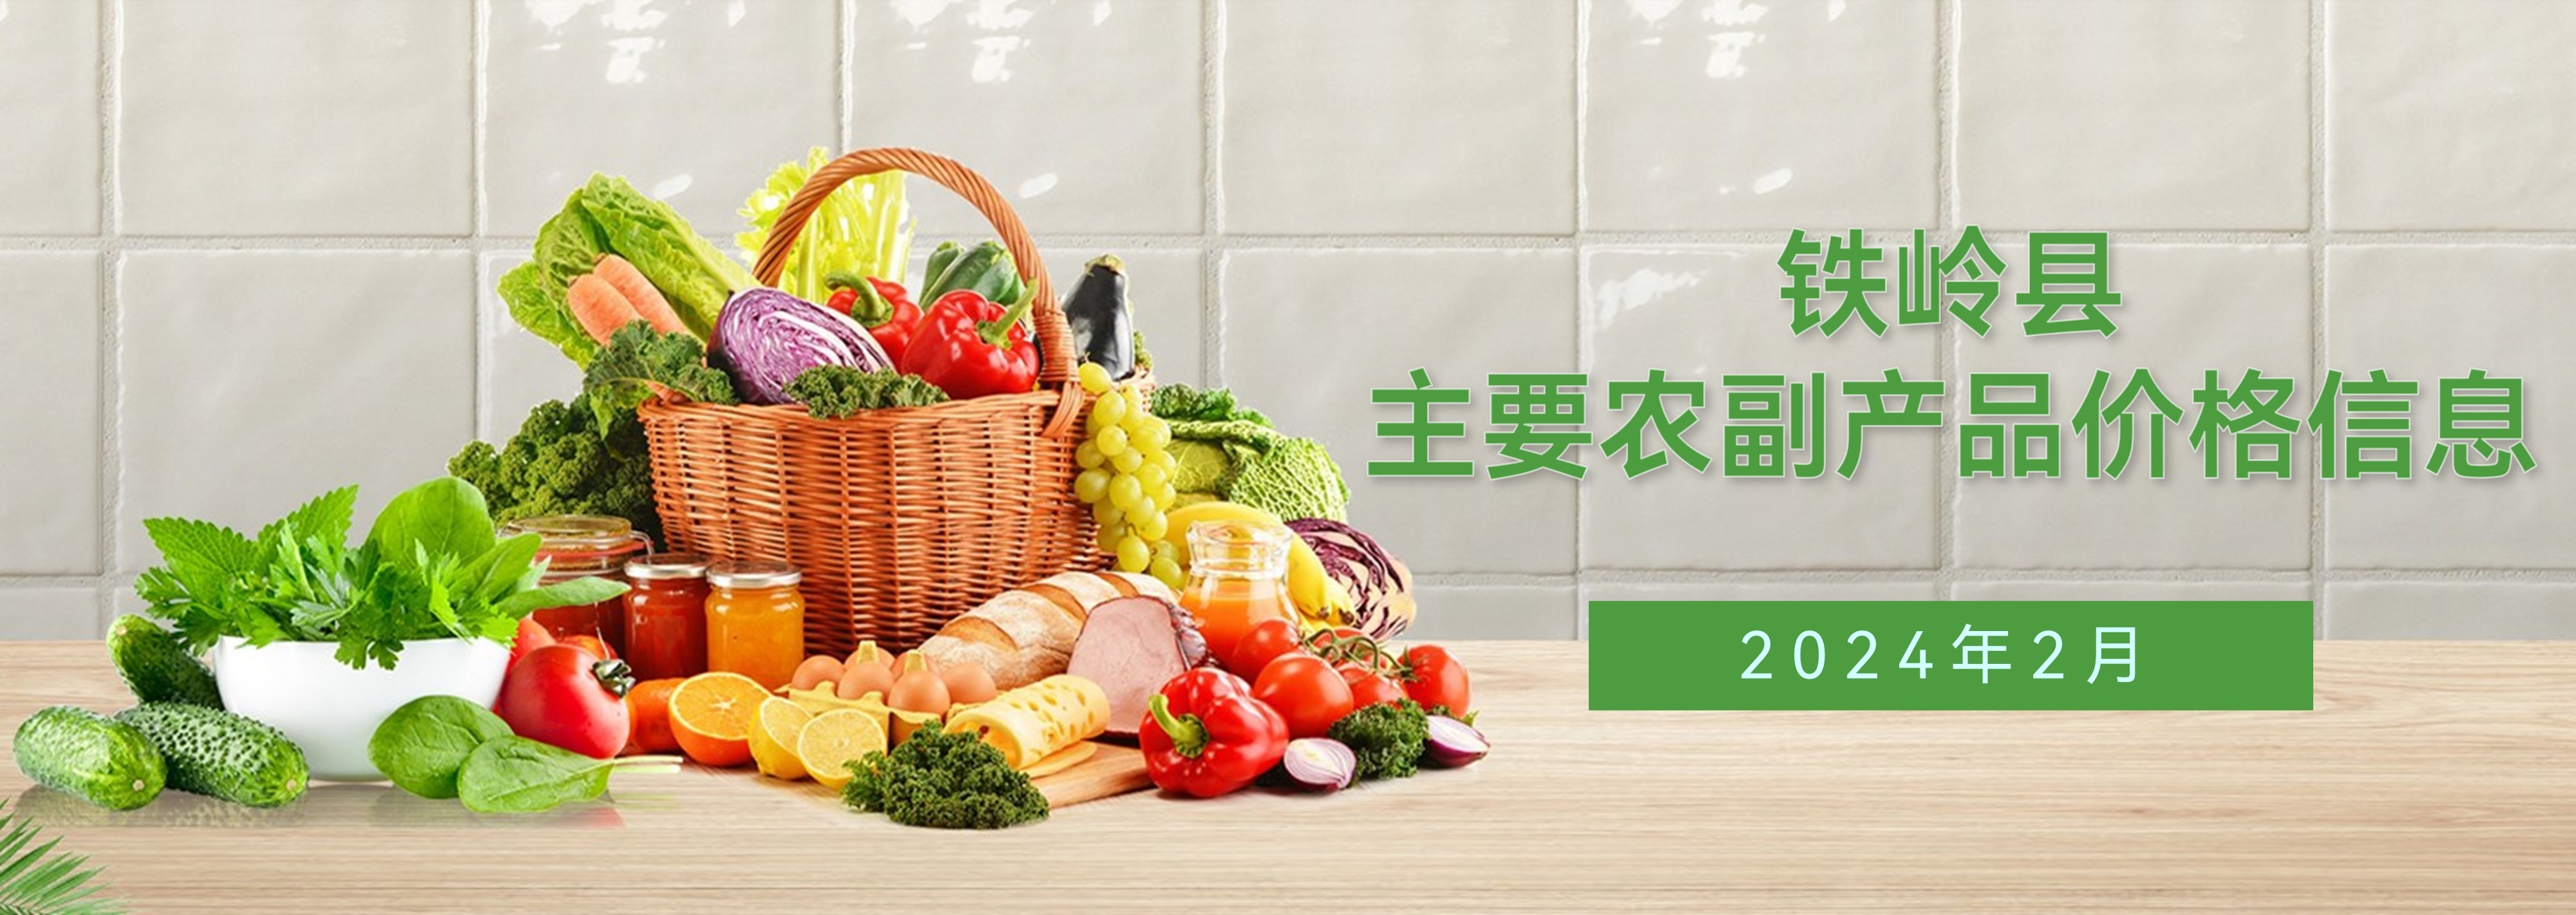 铁岭县2024年2月主要农副产品价格信息